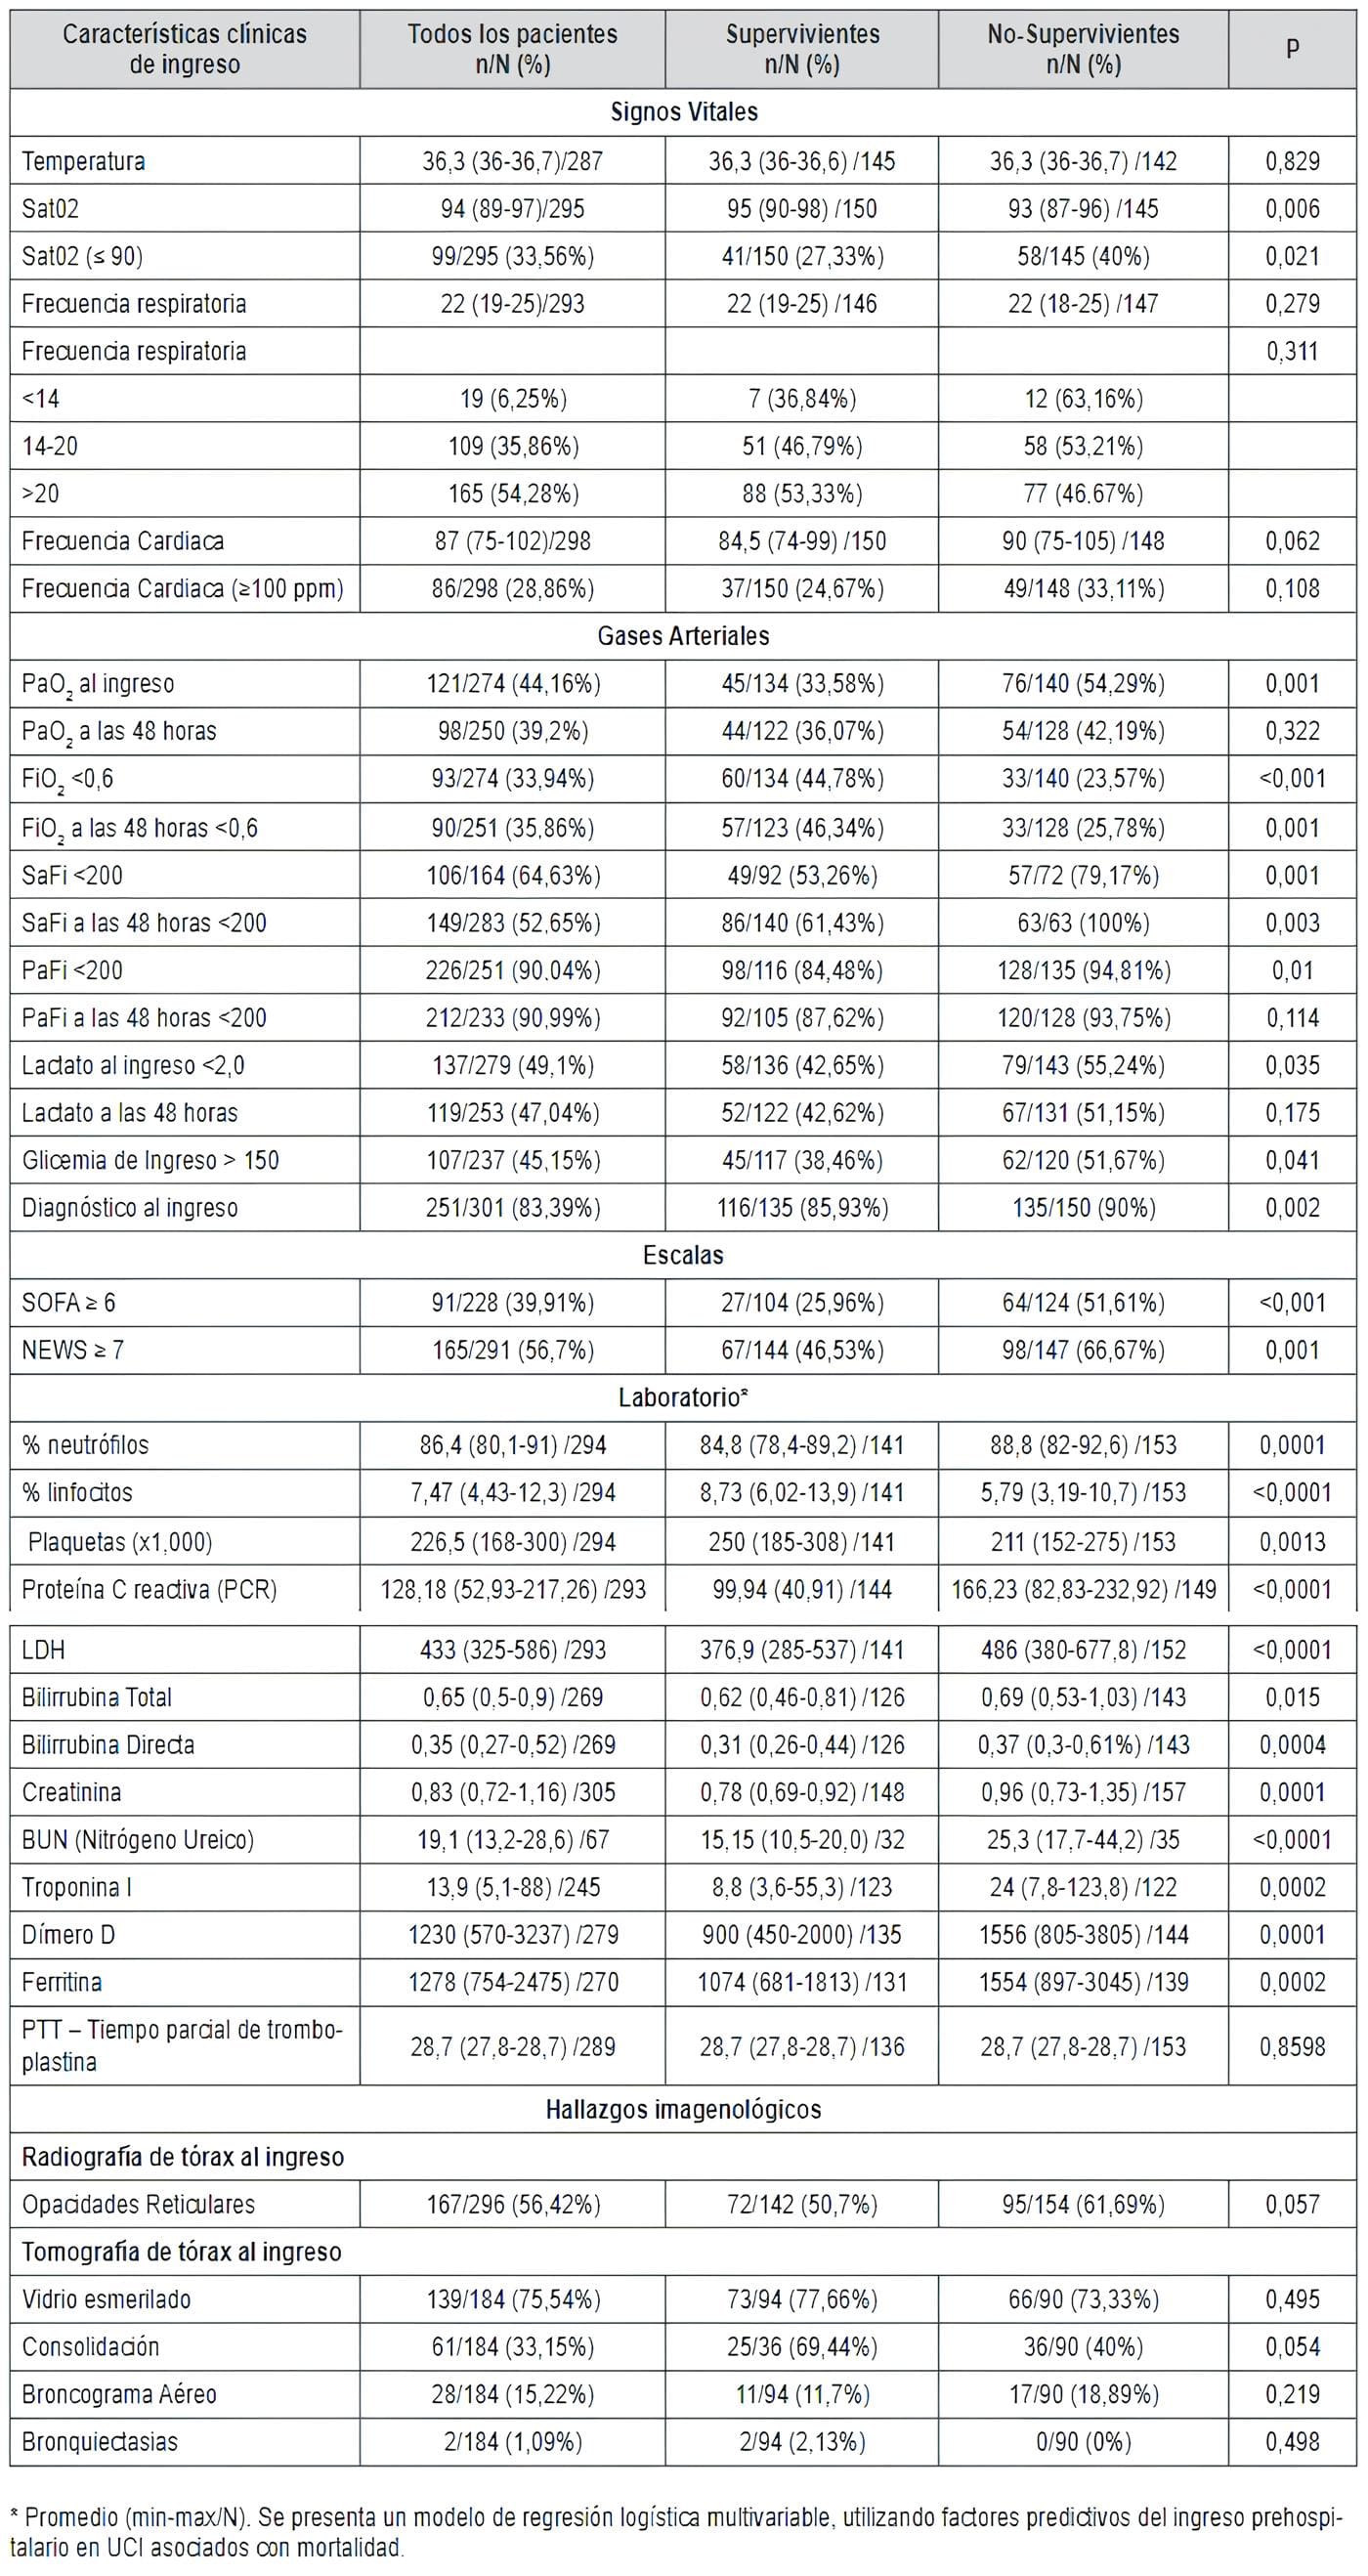 Mortalidad en UCI por Covid-19 - Variables clínicas de ingreso